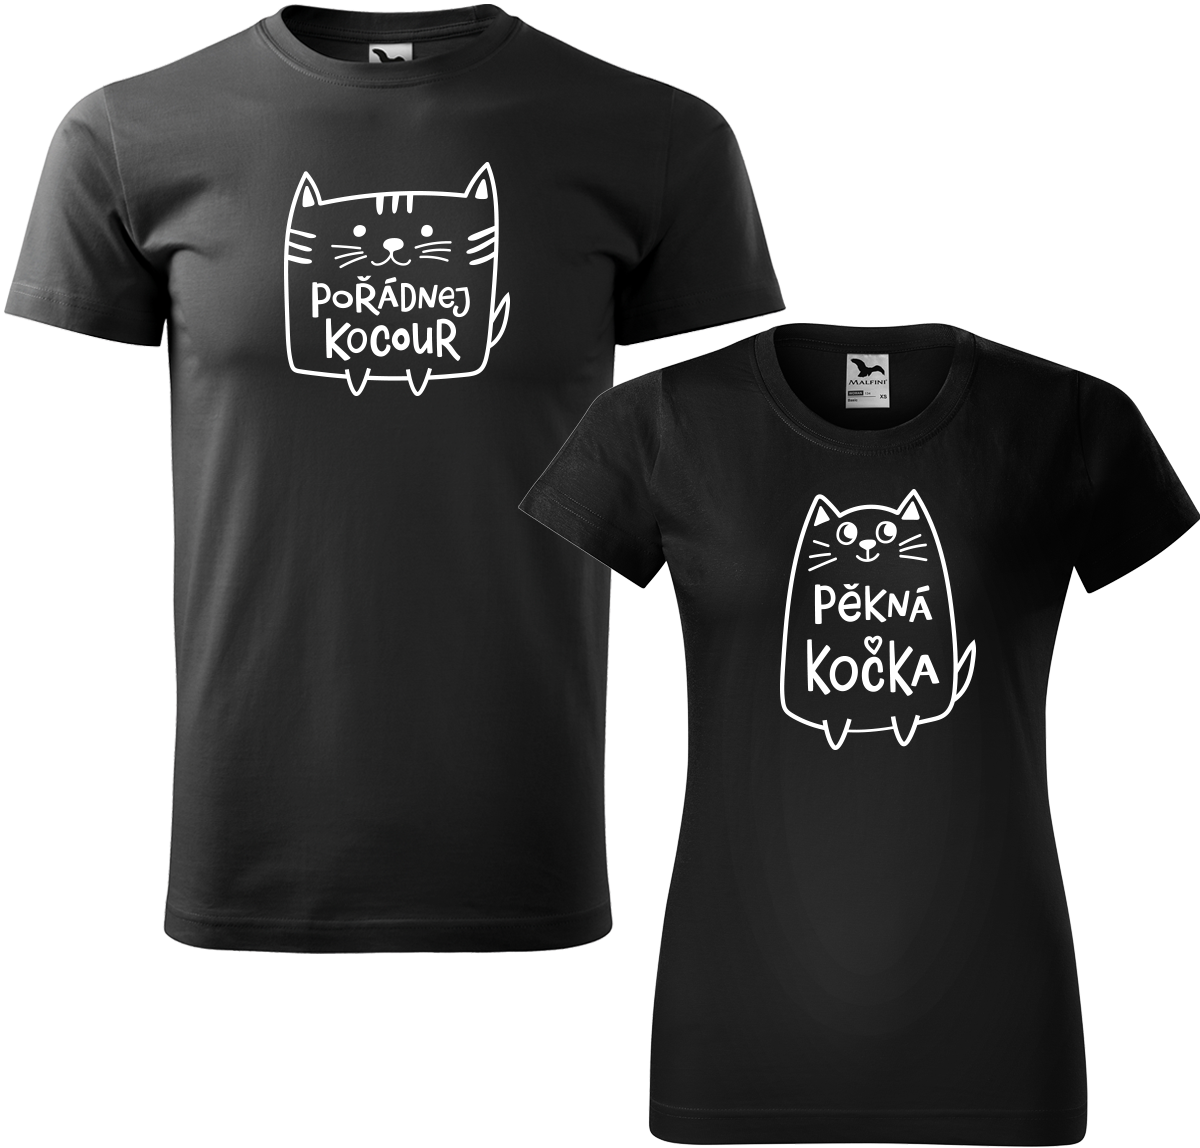 Trička pro páry - Pořádnej kocour a pěkná kočka Barva: Černá (01), Velikost dámské tričko: 3XL, Velikost pánské tričko: 3XL